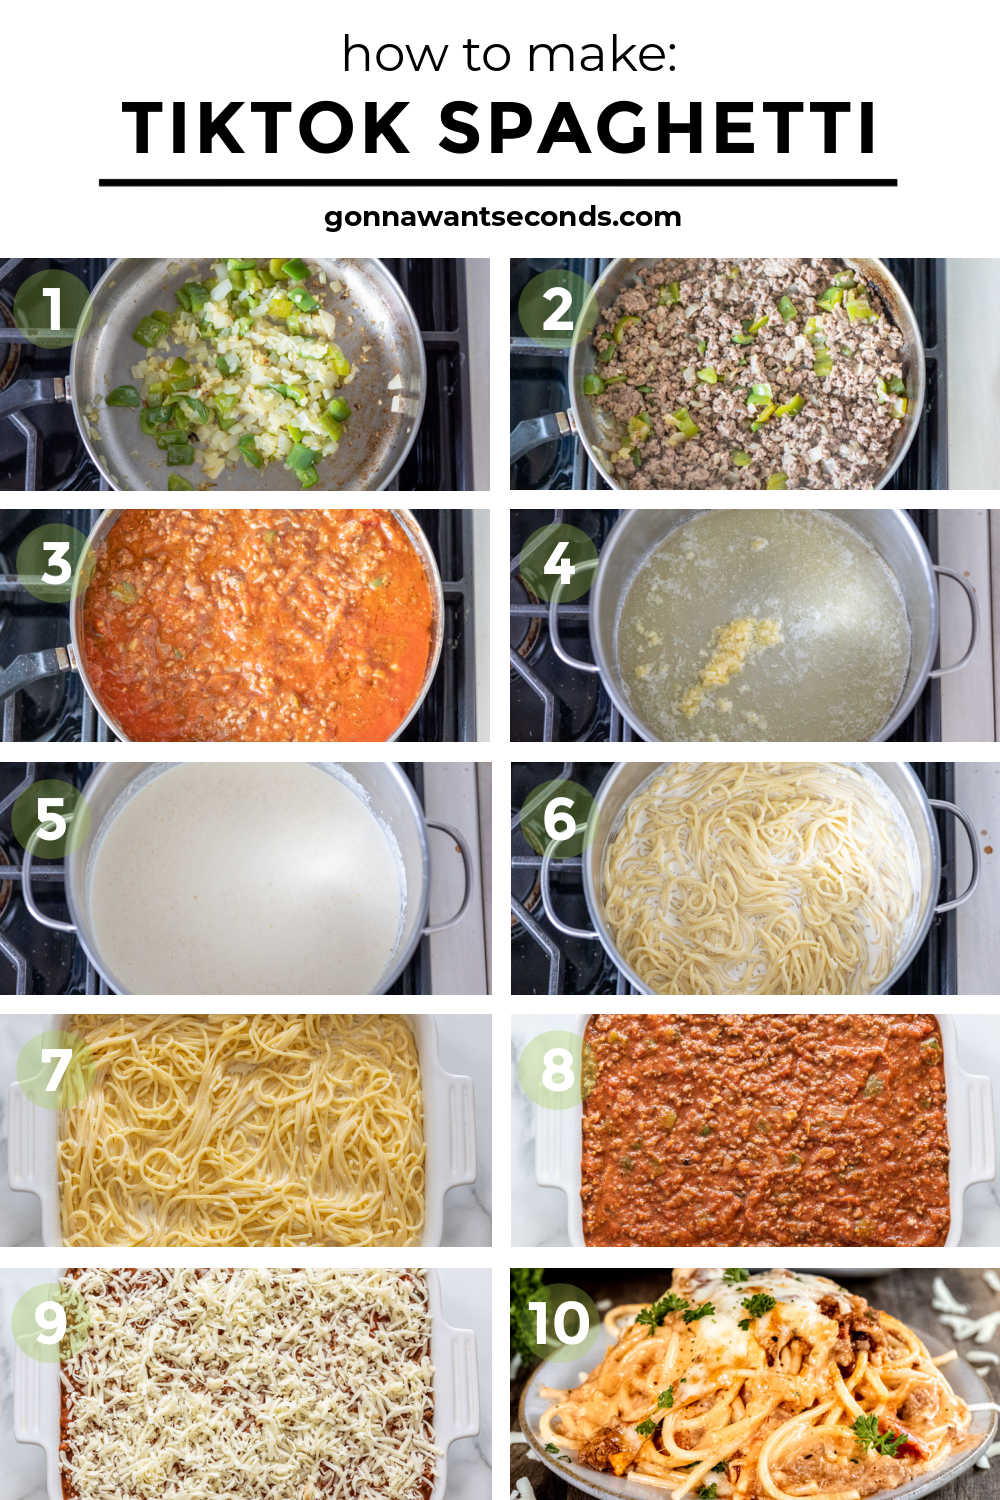 step by step how to make tiktok spaghetti